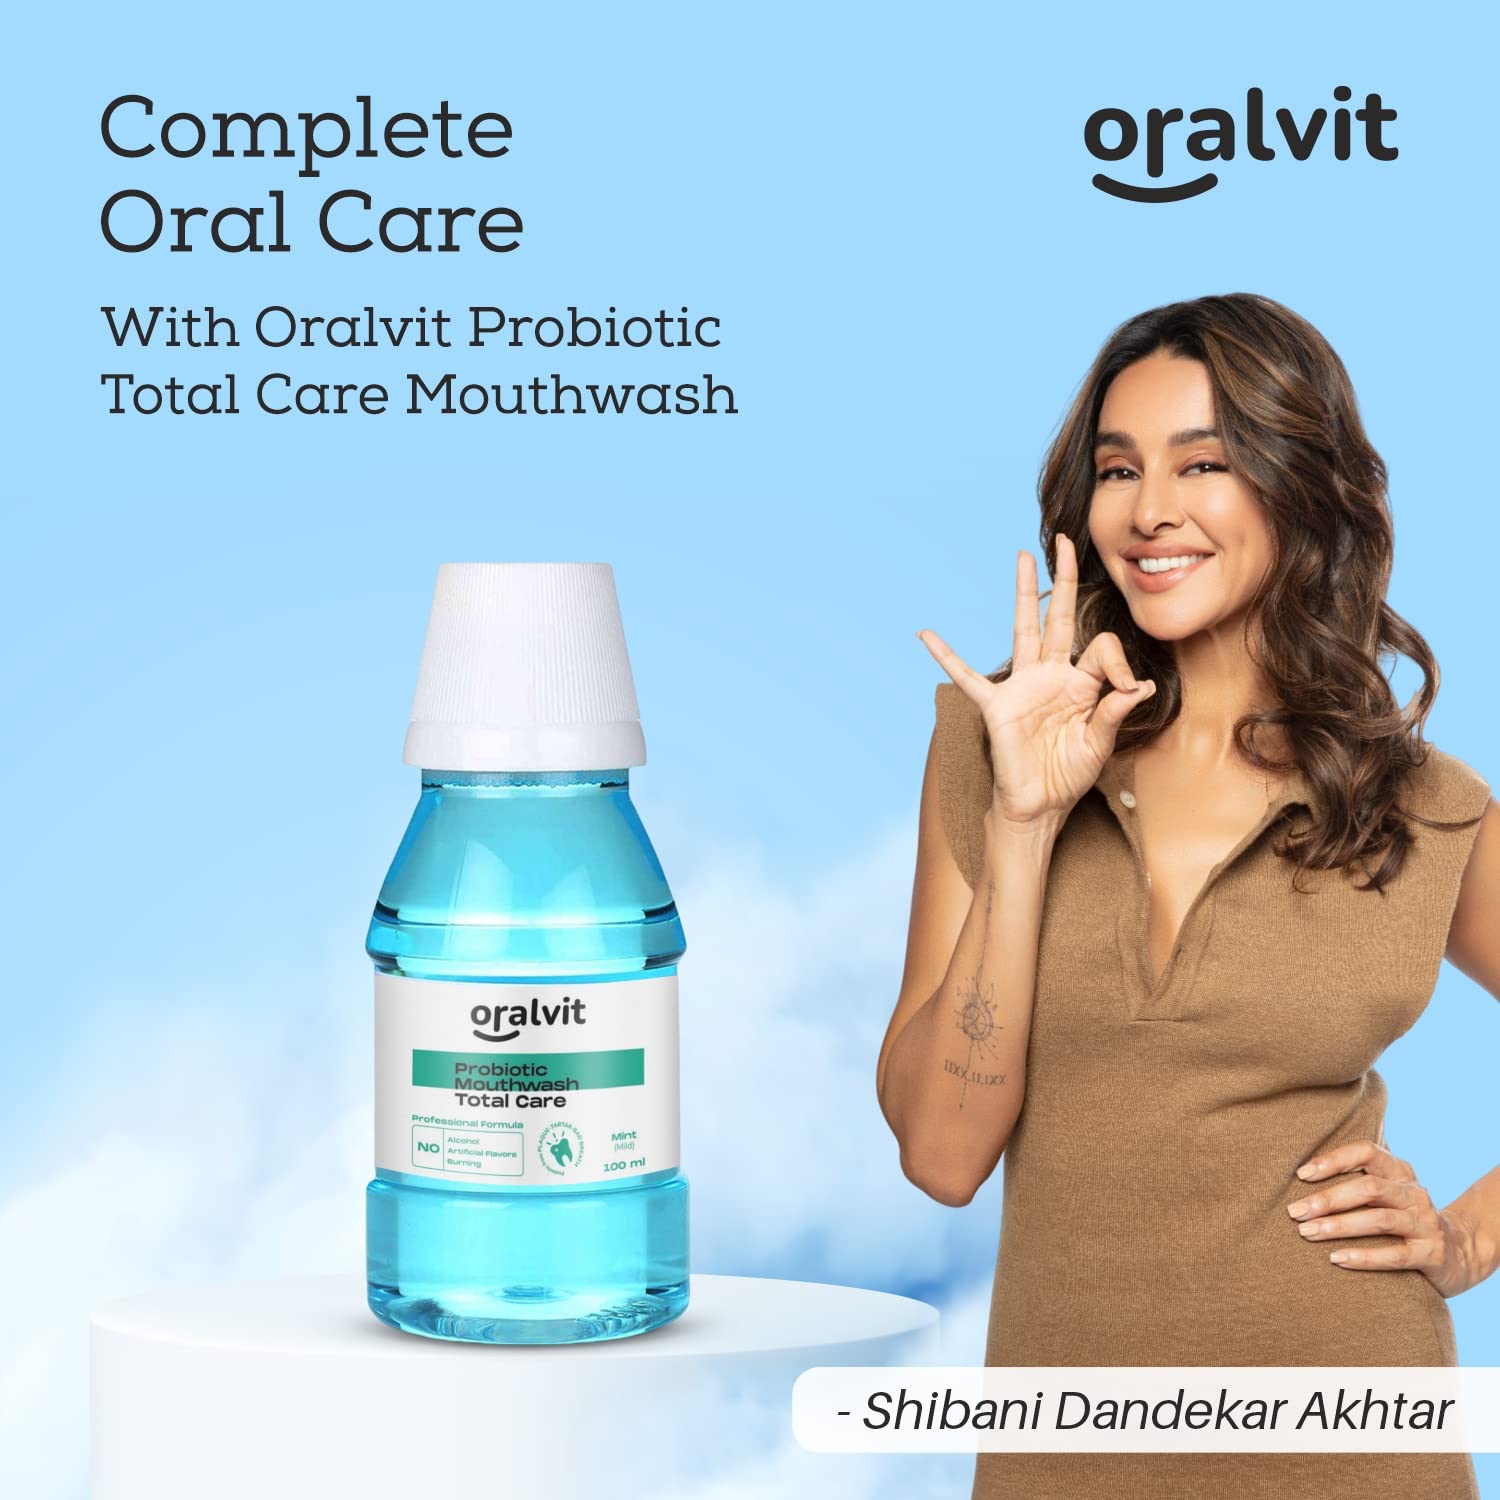 Oralvit Probiotic Total Care Mouthwash with Mild Mint | No Alcohol, No Burning Sensation, No Artificial Flavour | For Men & Women ‚Äì 100ml (Pack of 4)